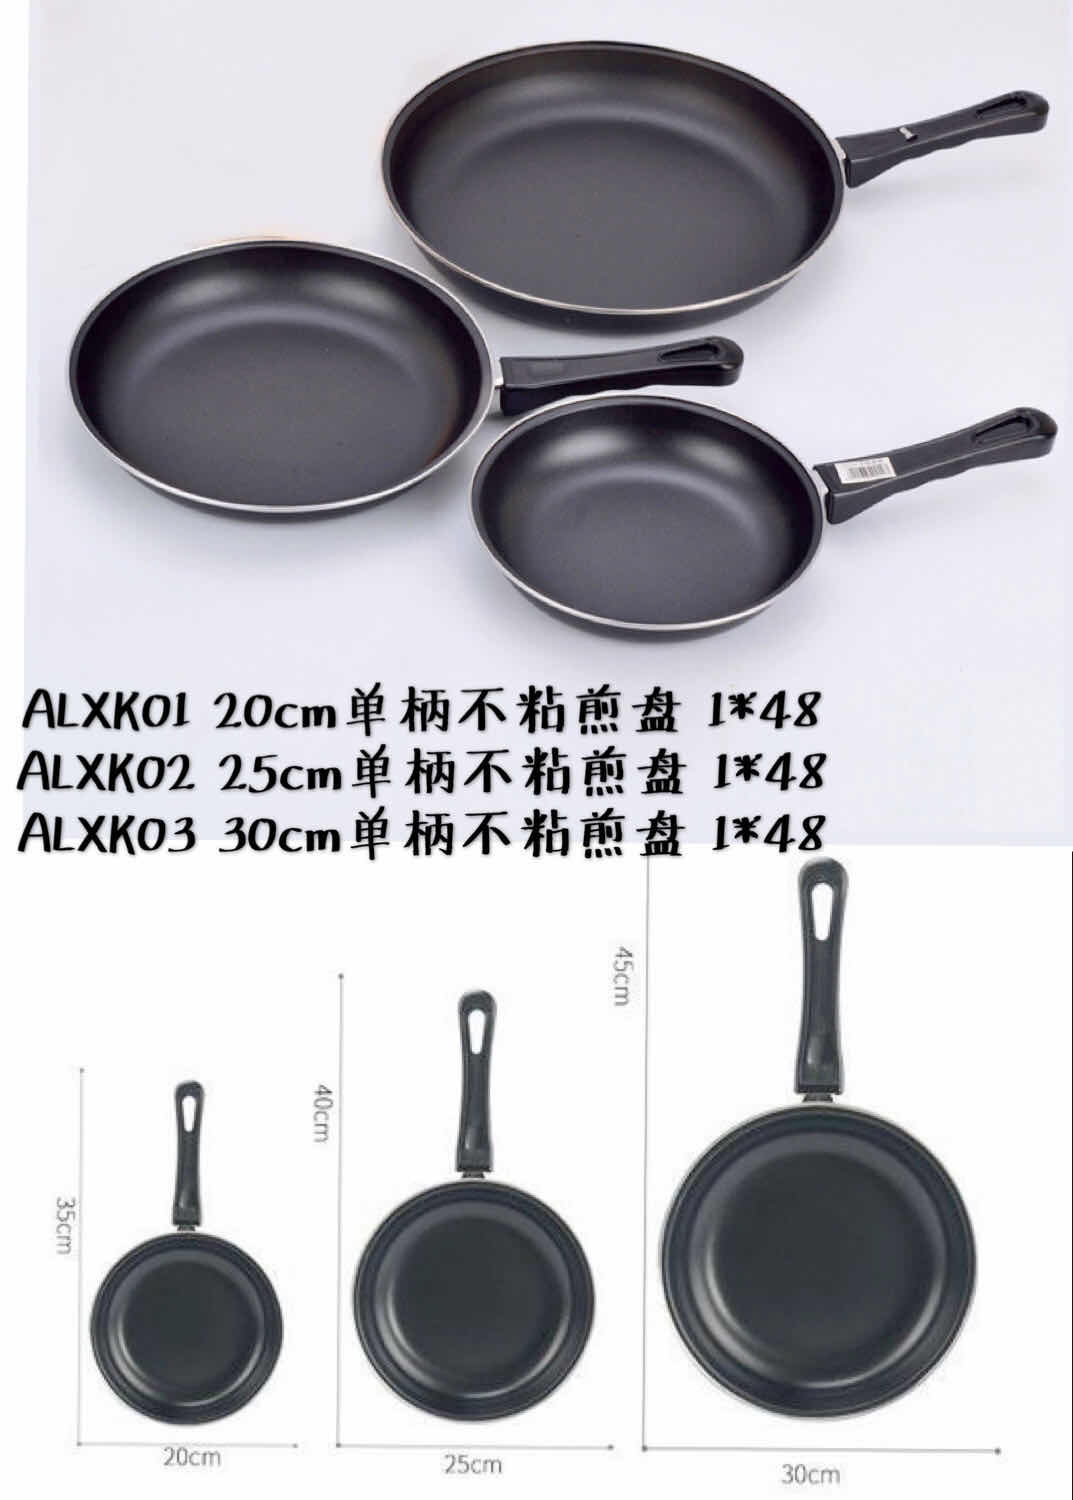 saute pans for sale